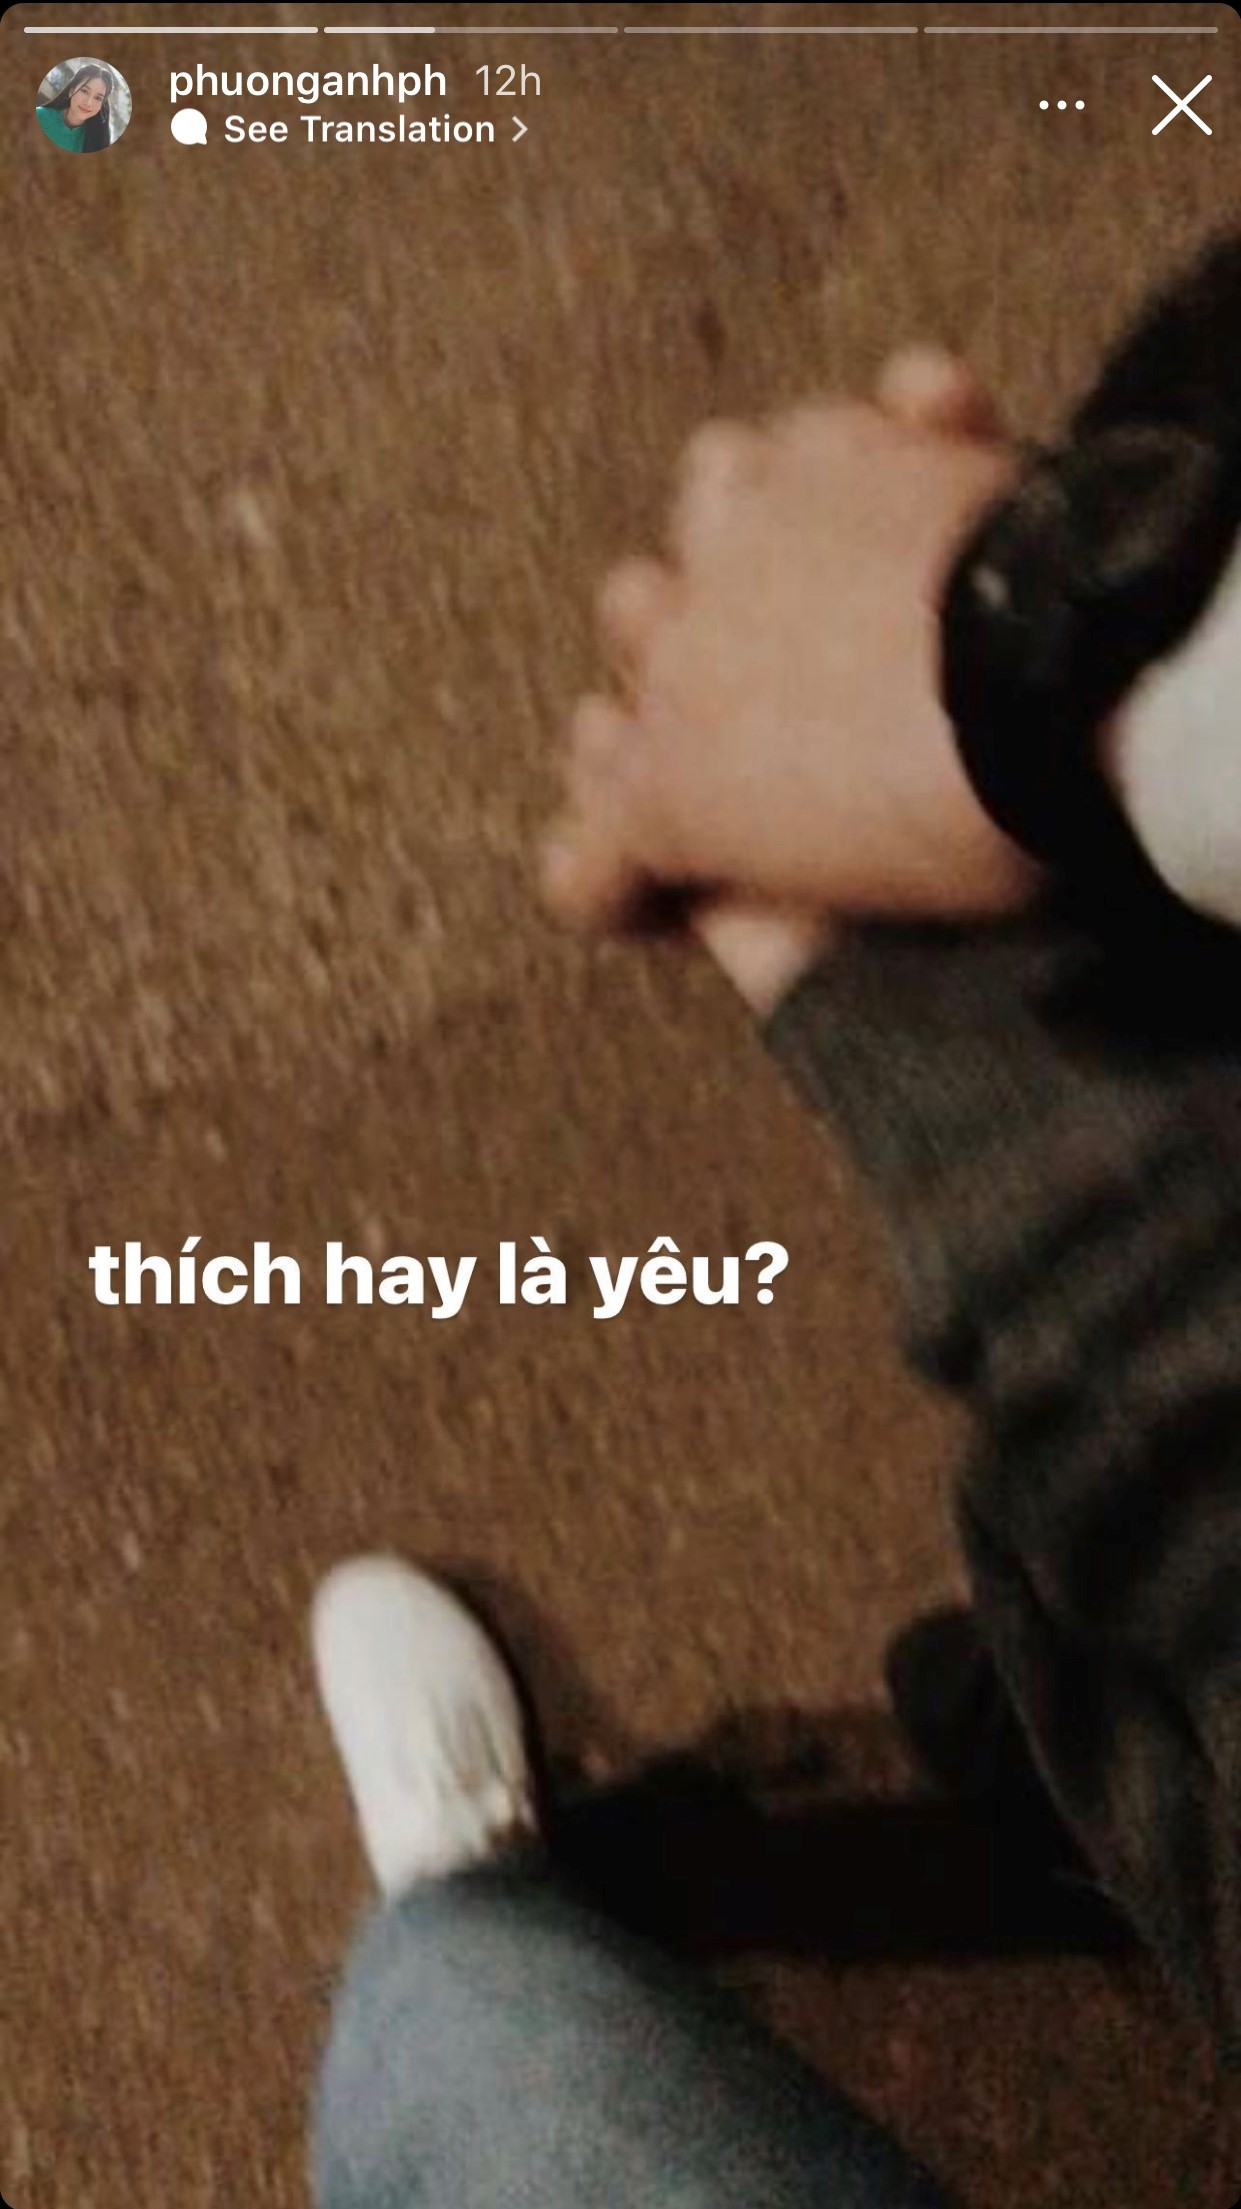 Á hậu Phương Anh cũng đăng tải ảnh nắm tay cùng 'người lạ' cùng với caption y chang đàn chị:'Thích hay là yêu?'.